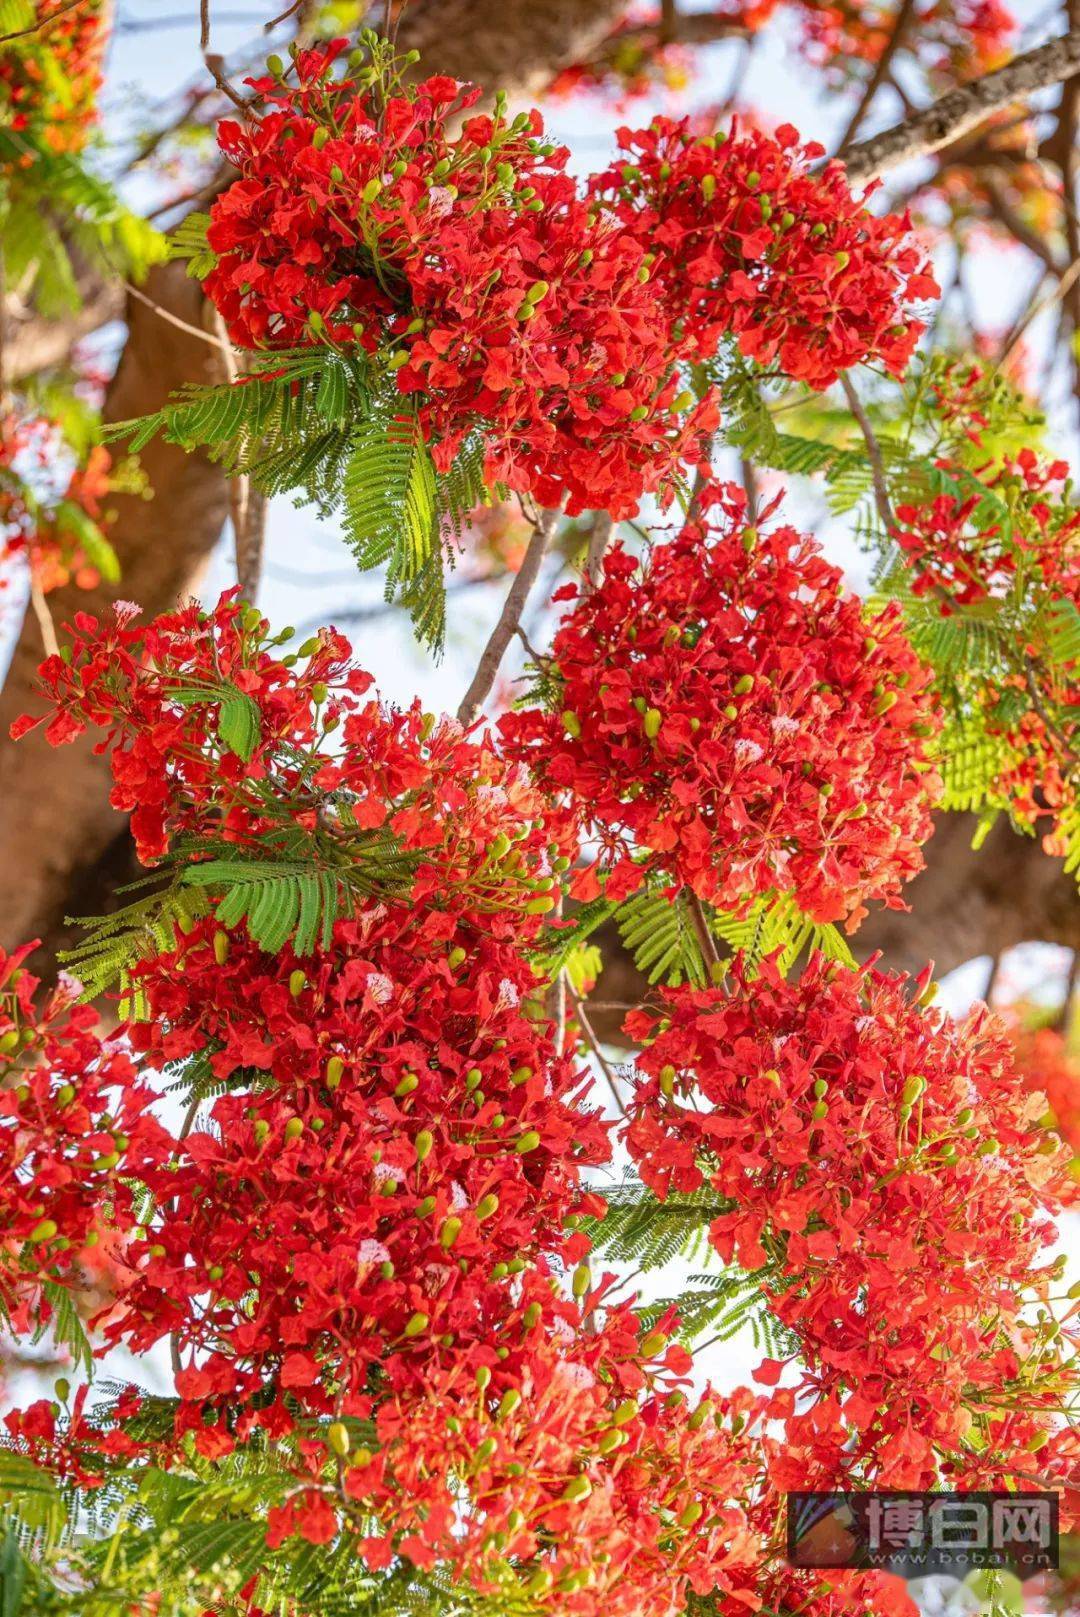 博白云飞嶂脚有一棵古老的凤凰树,凤凰花开染红美丽乡村!